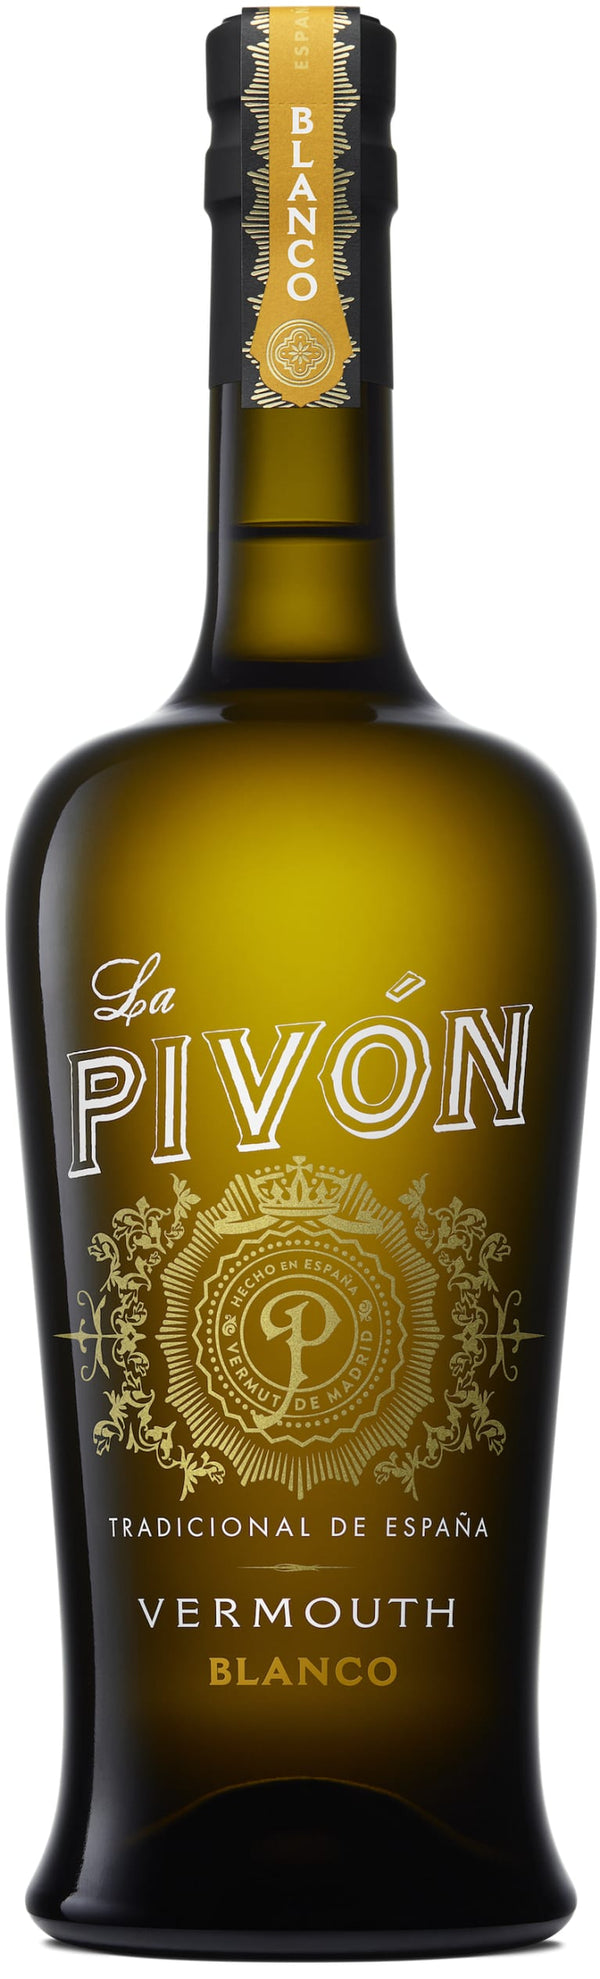 La Pivon Blanco Vermouth